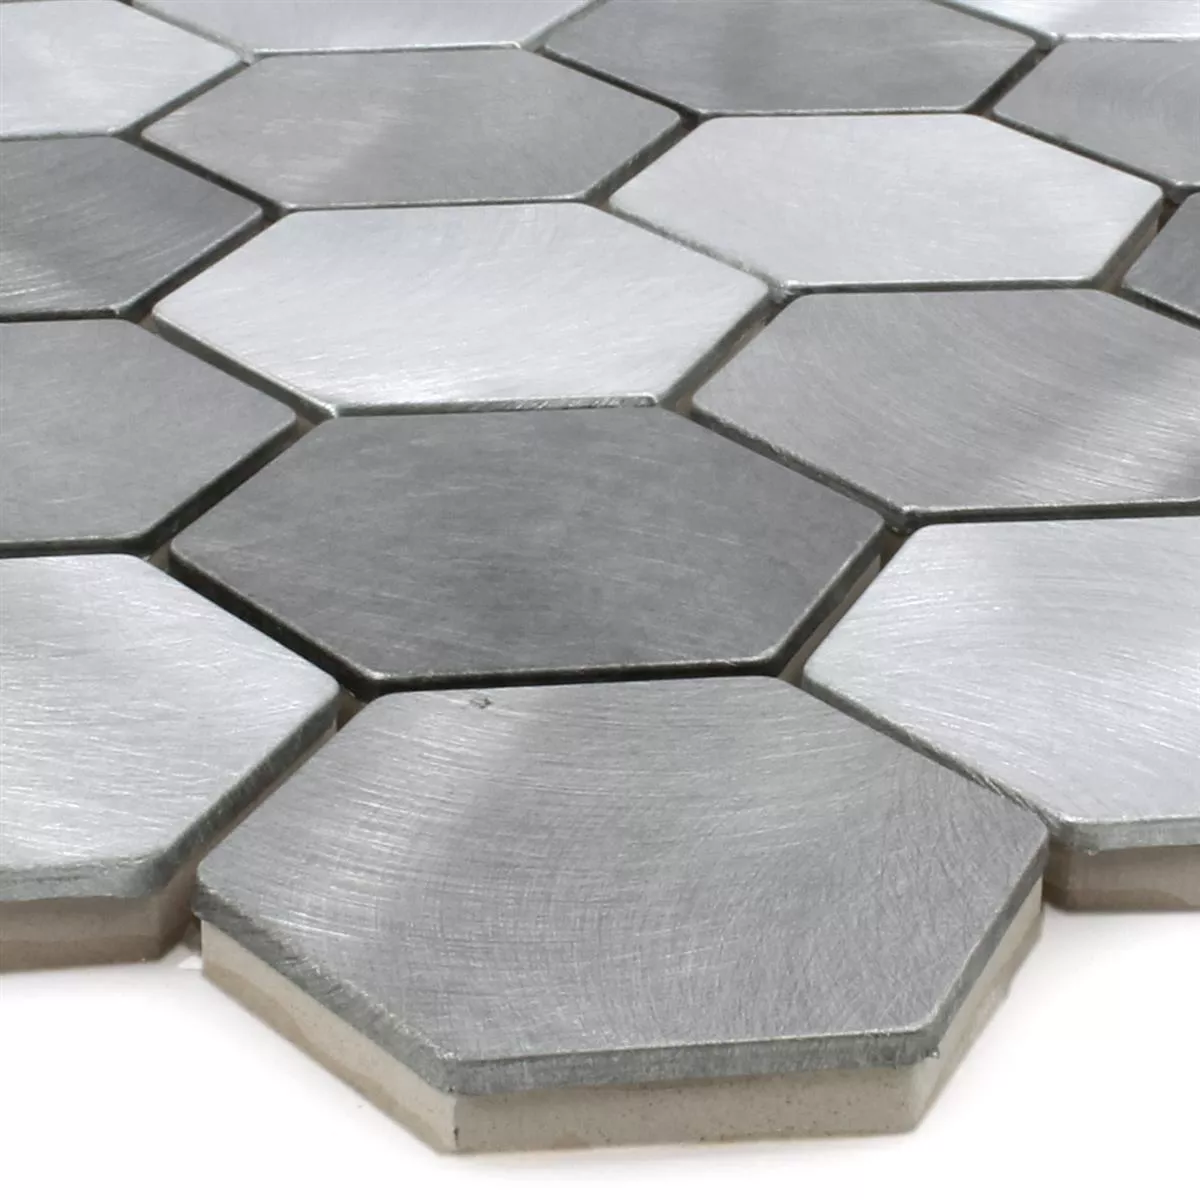 Mosaïque Aluminium Manhatten Hexagone Gris Argent